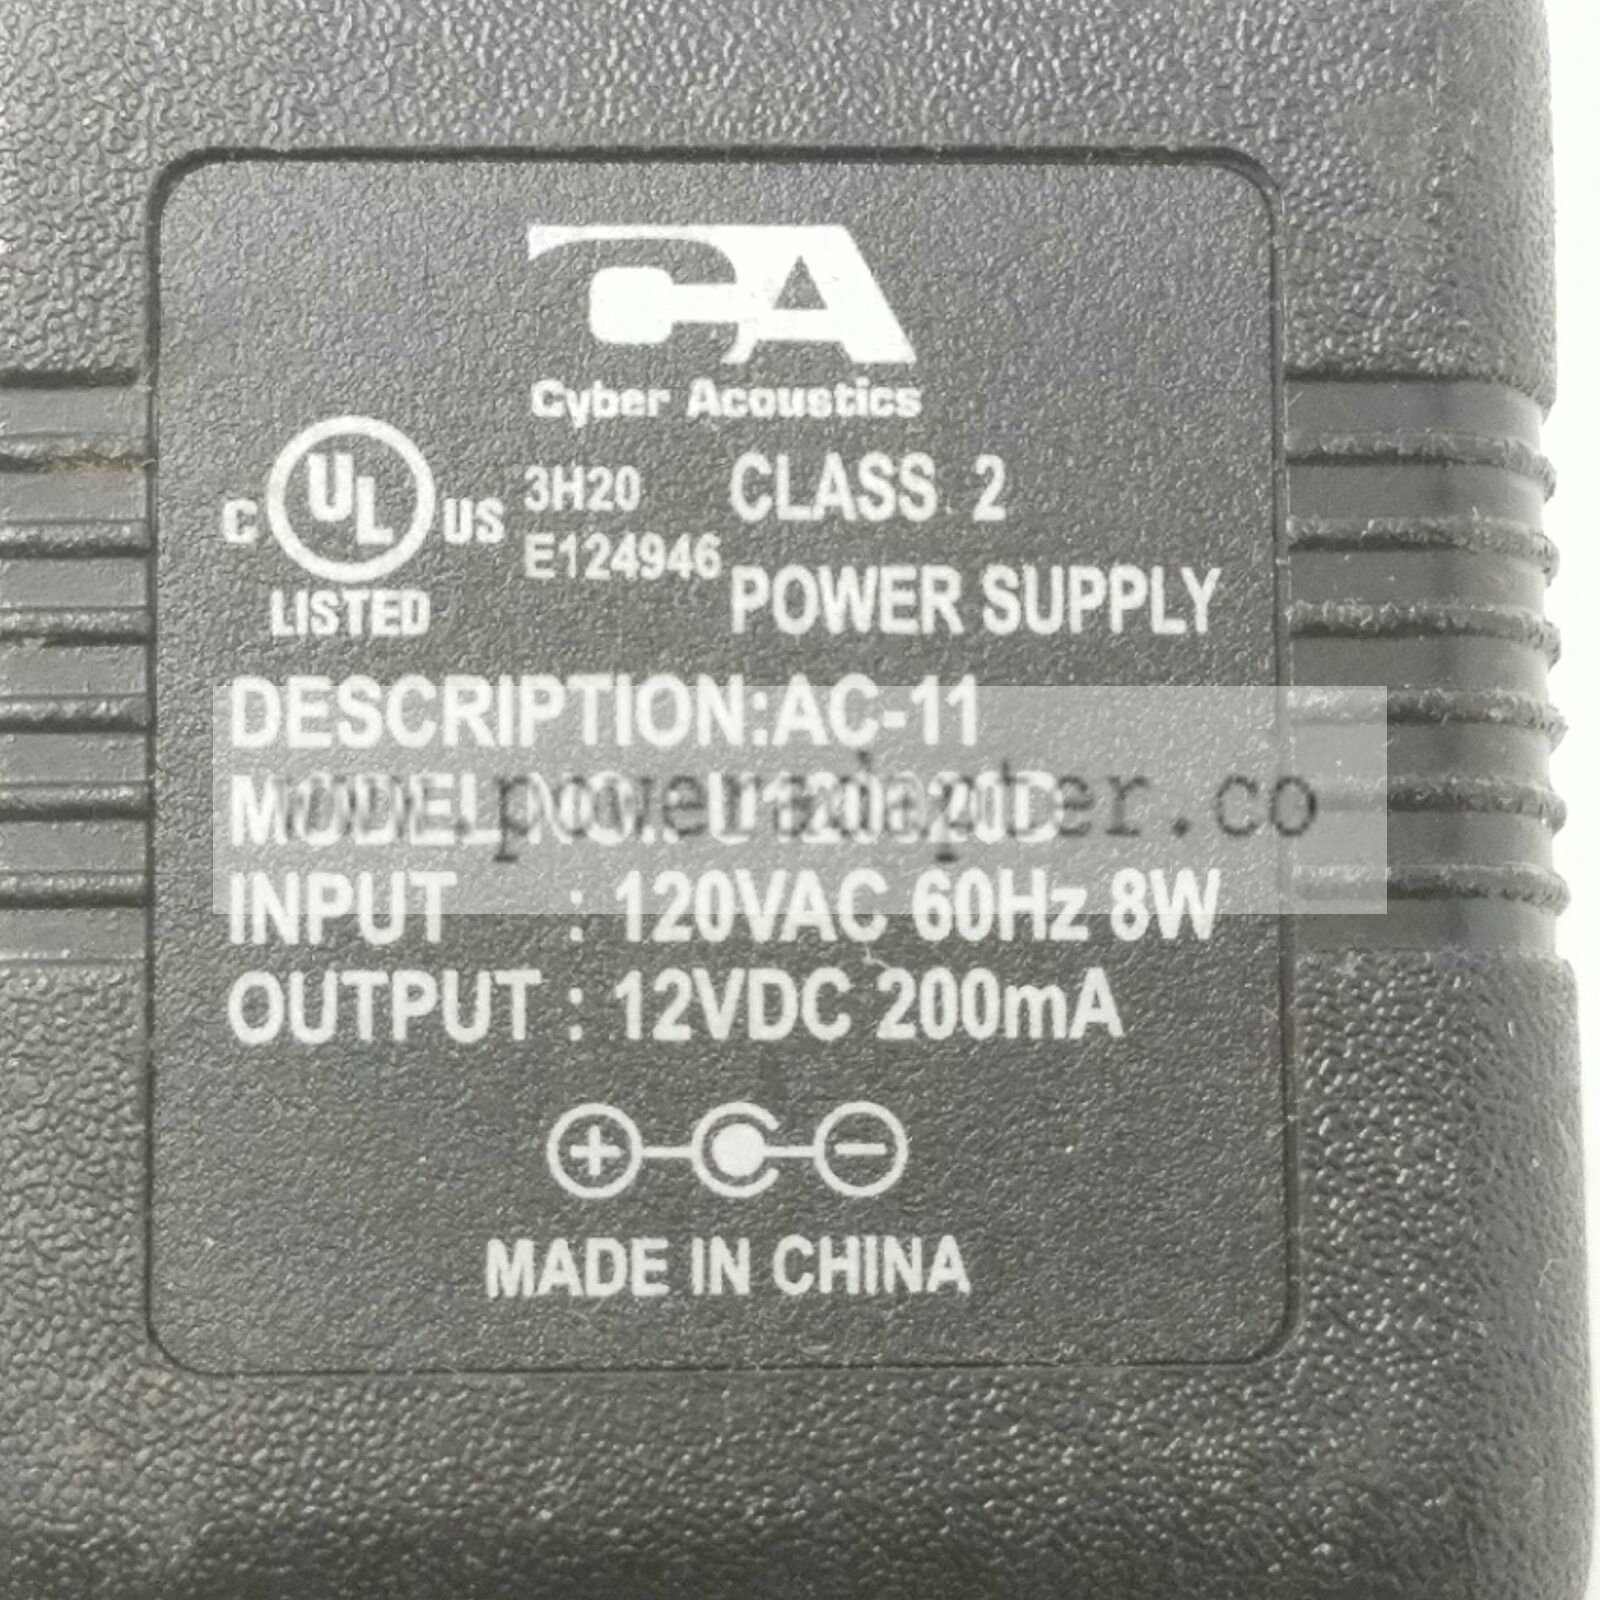 Cyber Acoustics AC-11 AC Power Adapter U120020D Output 12VDC 200mA Brand: Cyber Acoustics MPN: U120020D Model: U1